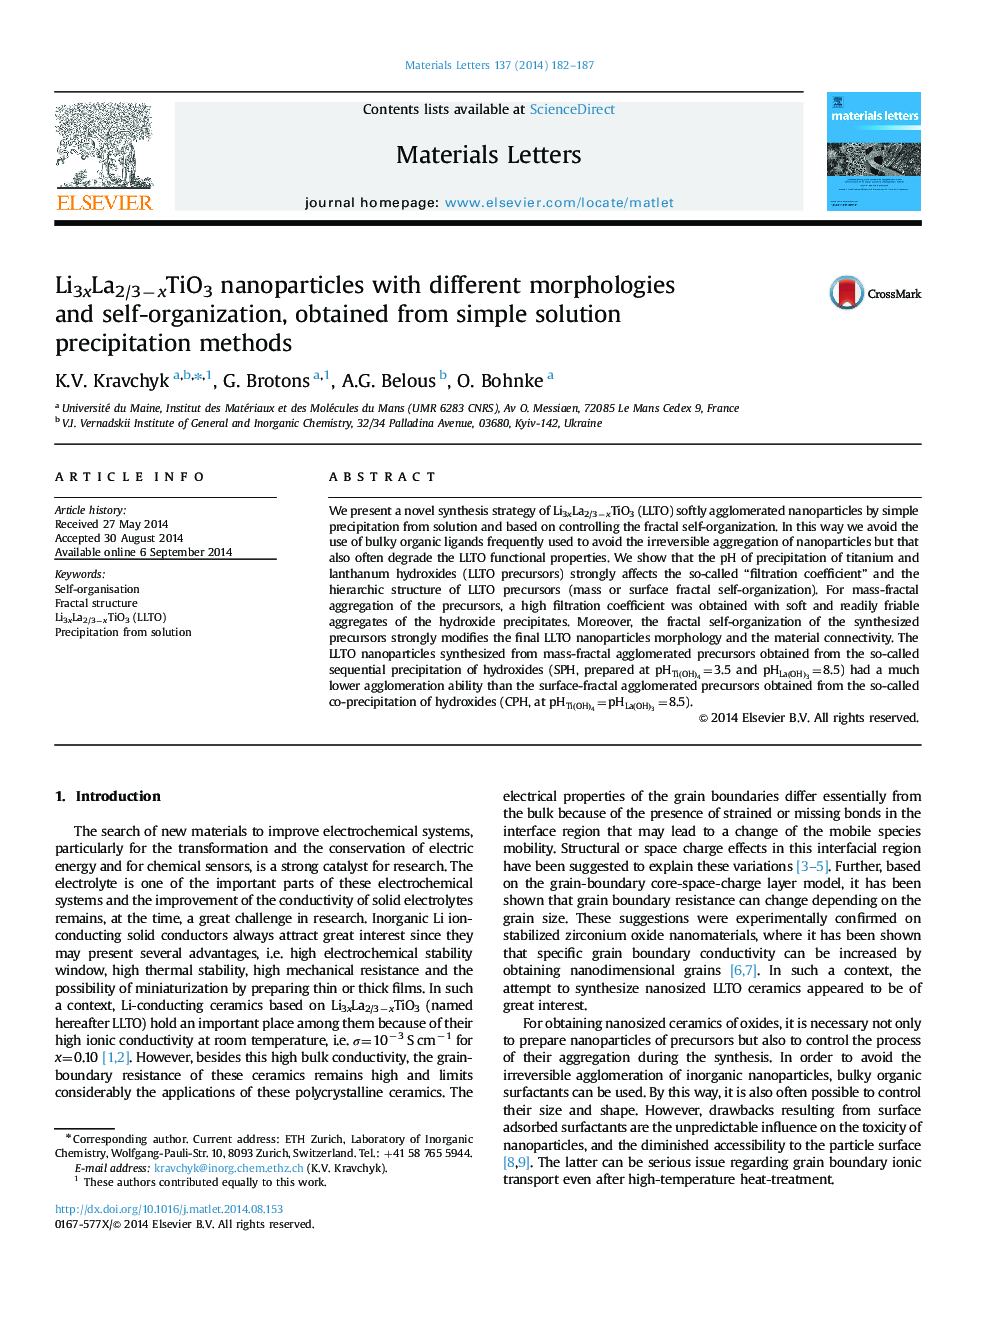 Li3xLa2/3âxTiO3 nanoparticles with different morphologies and self-organization, obtained from simple solution precipitation methods